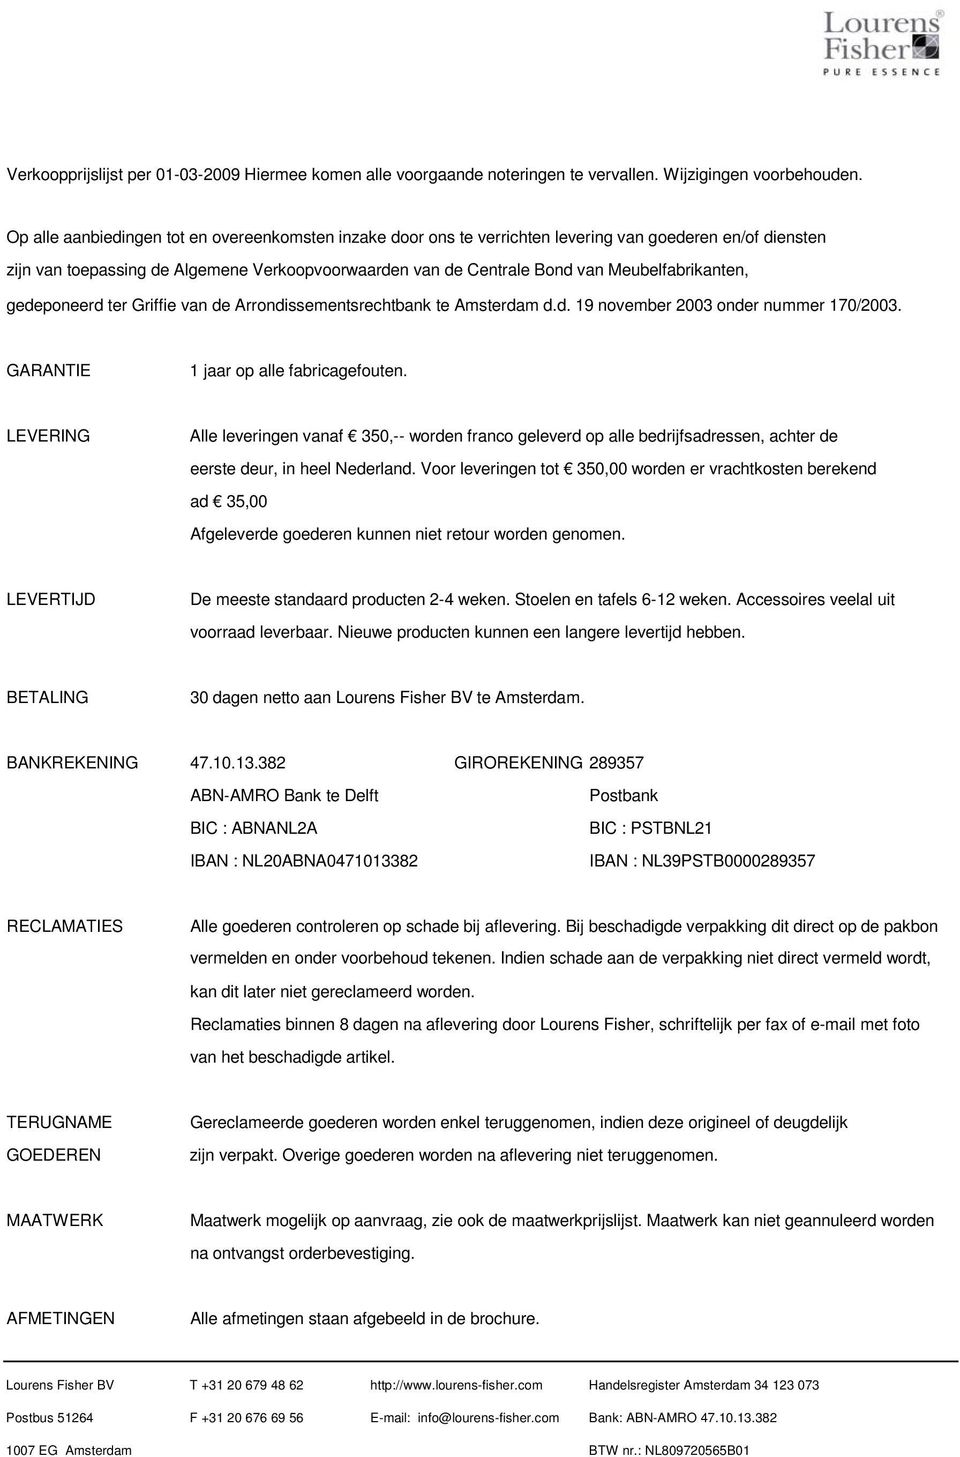 Meubelfabrikanten, gedeponeerd ter Griffie van de Arrondissementsrechtbank te Amsterdam d.d. 19 november 2003 onder nummer 170/2003. GARANTIE 1 jaar op alle fabricagefouten.